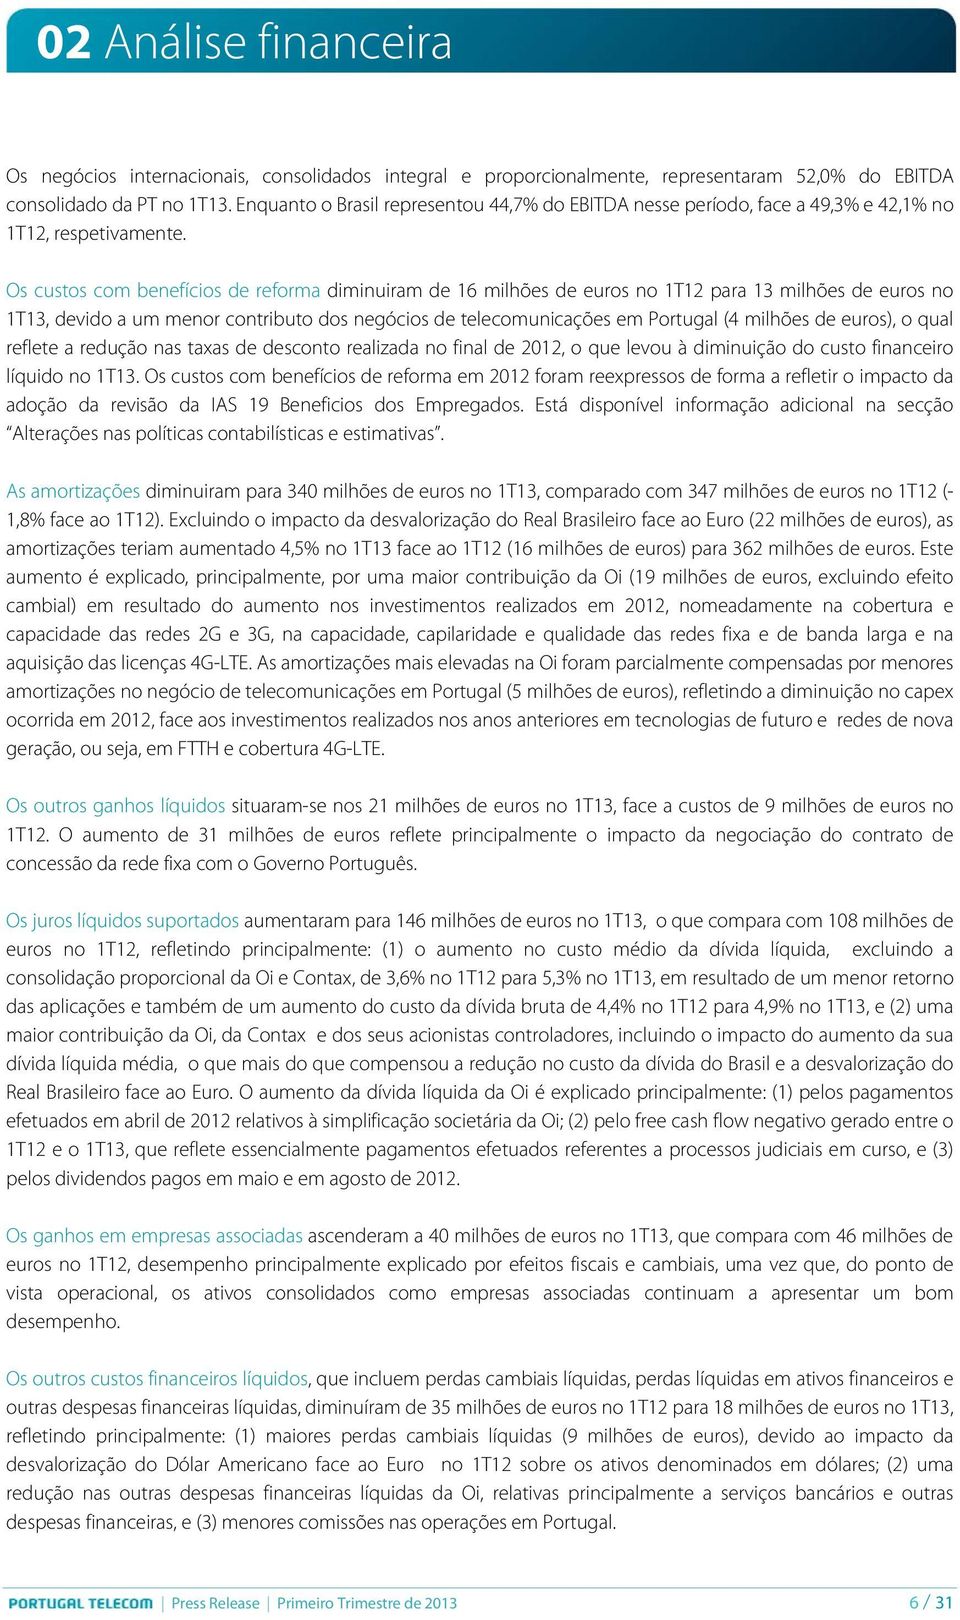 Os custos com benefícios de reforma diminuiram de 16 milhões de euros no 1T12 para 13 milhões de euros no 1T13, devido a um menor contributo dos negócios de telecomunicações em Portugal (4 milhões de